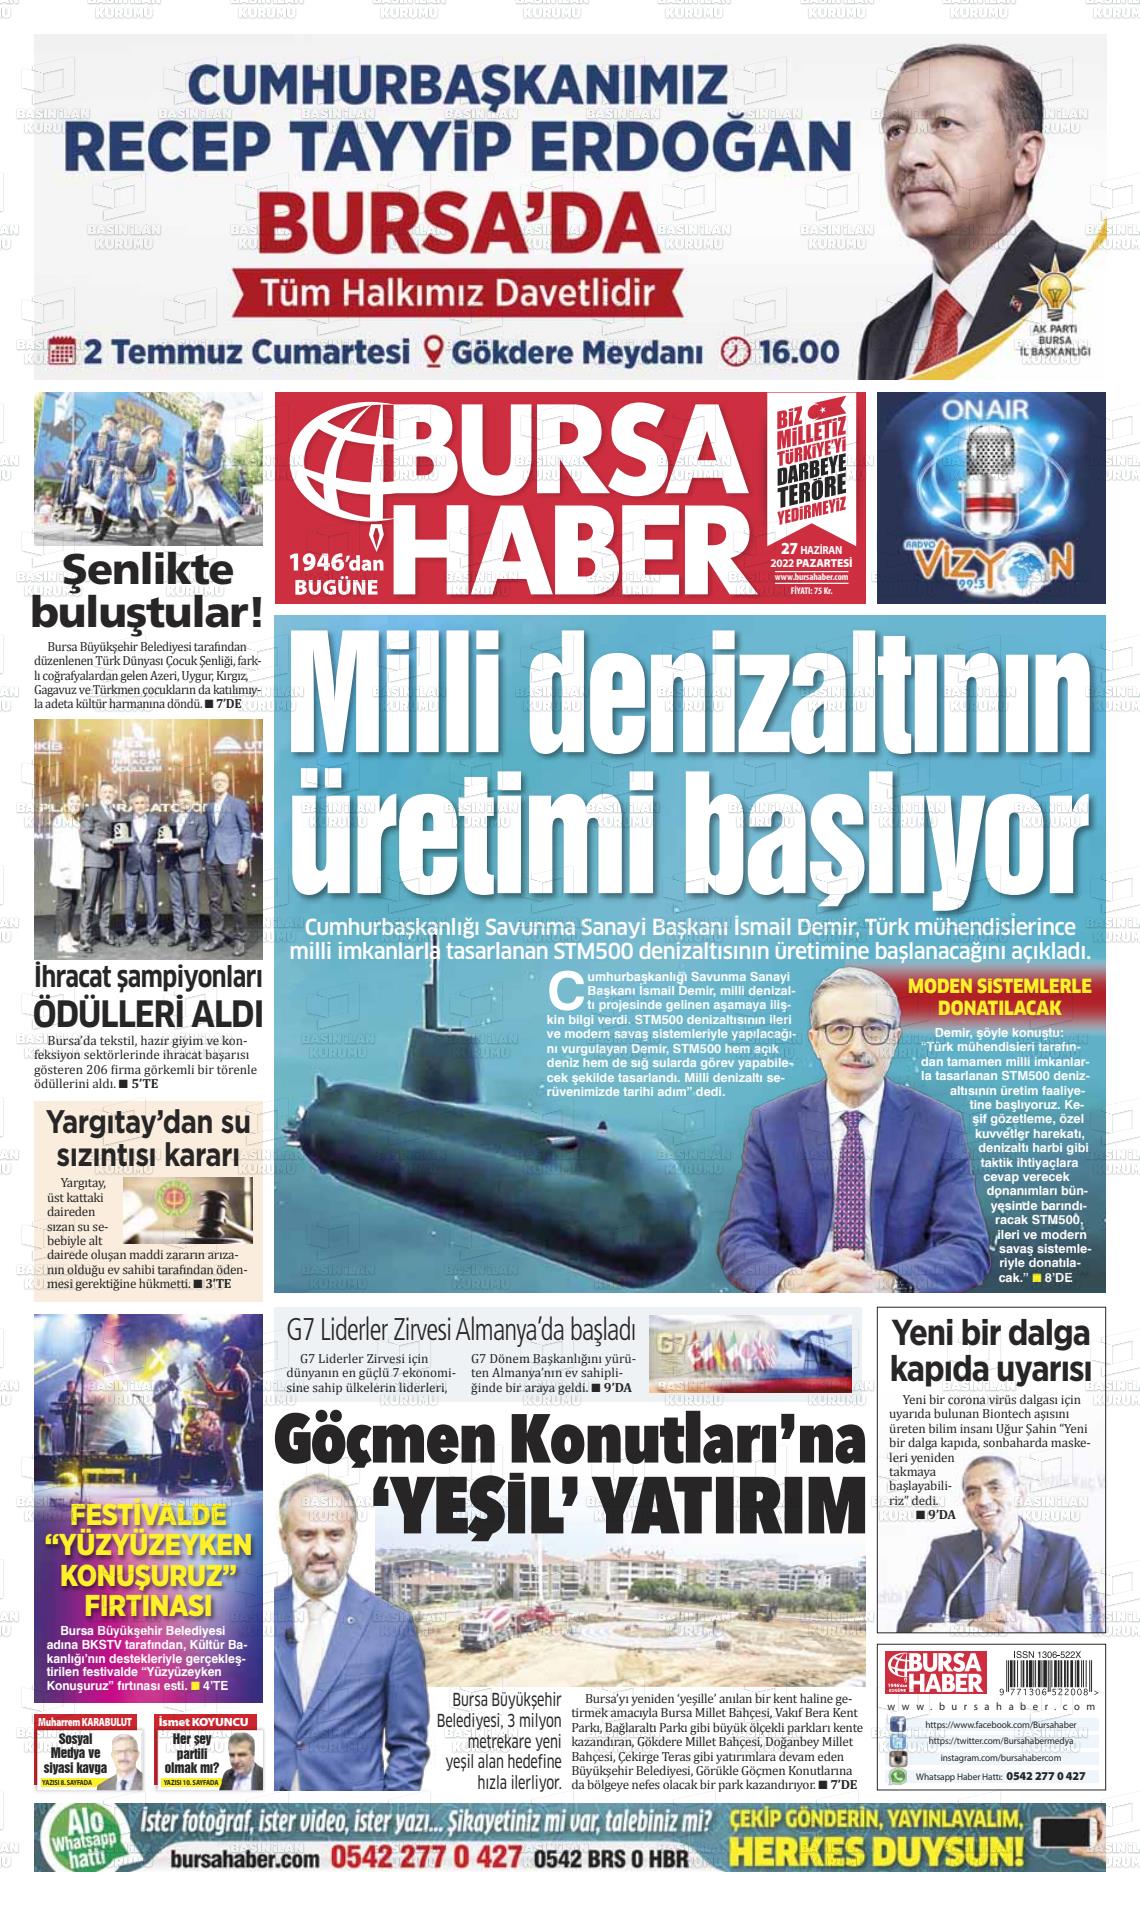 27 Haziran 2022 Bursa Haber Gazete Manşeti